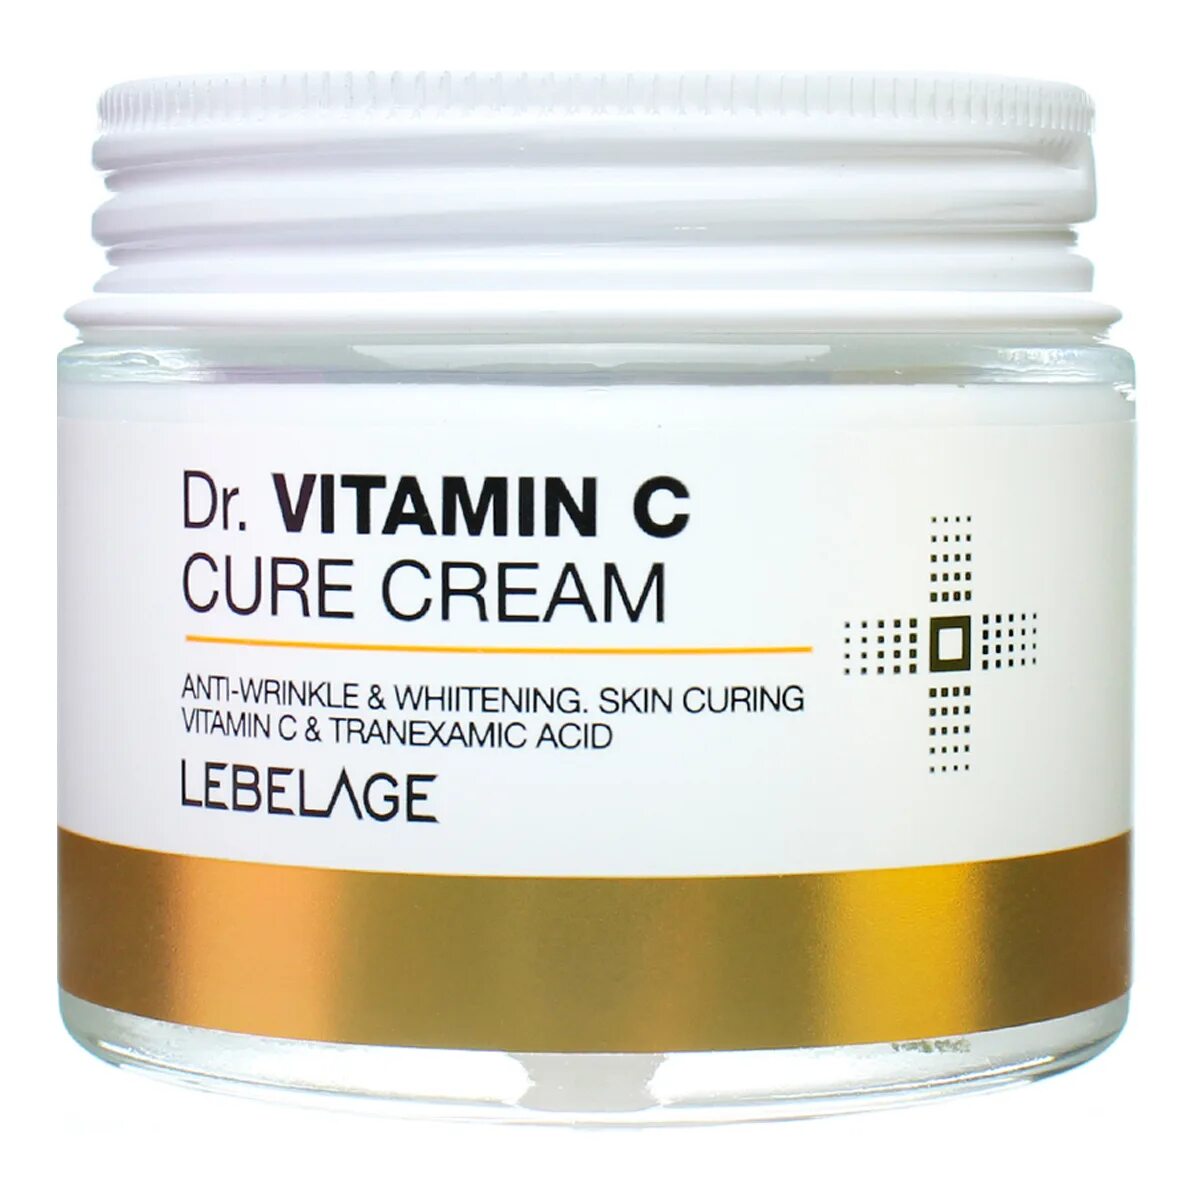 Lebelage Dr Vitamin c Cure Cream. Крем для лица Lebelage Dr. Snail, антивозрастной, 70мл. Lebelage Dr. Snail Cure Cream 70 ml. Lebelage крем для лица Dr Cure Cream.